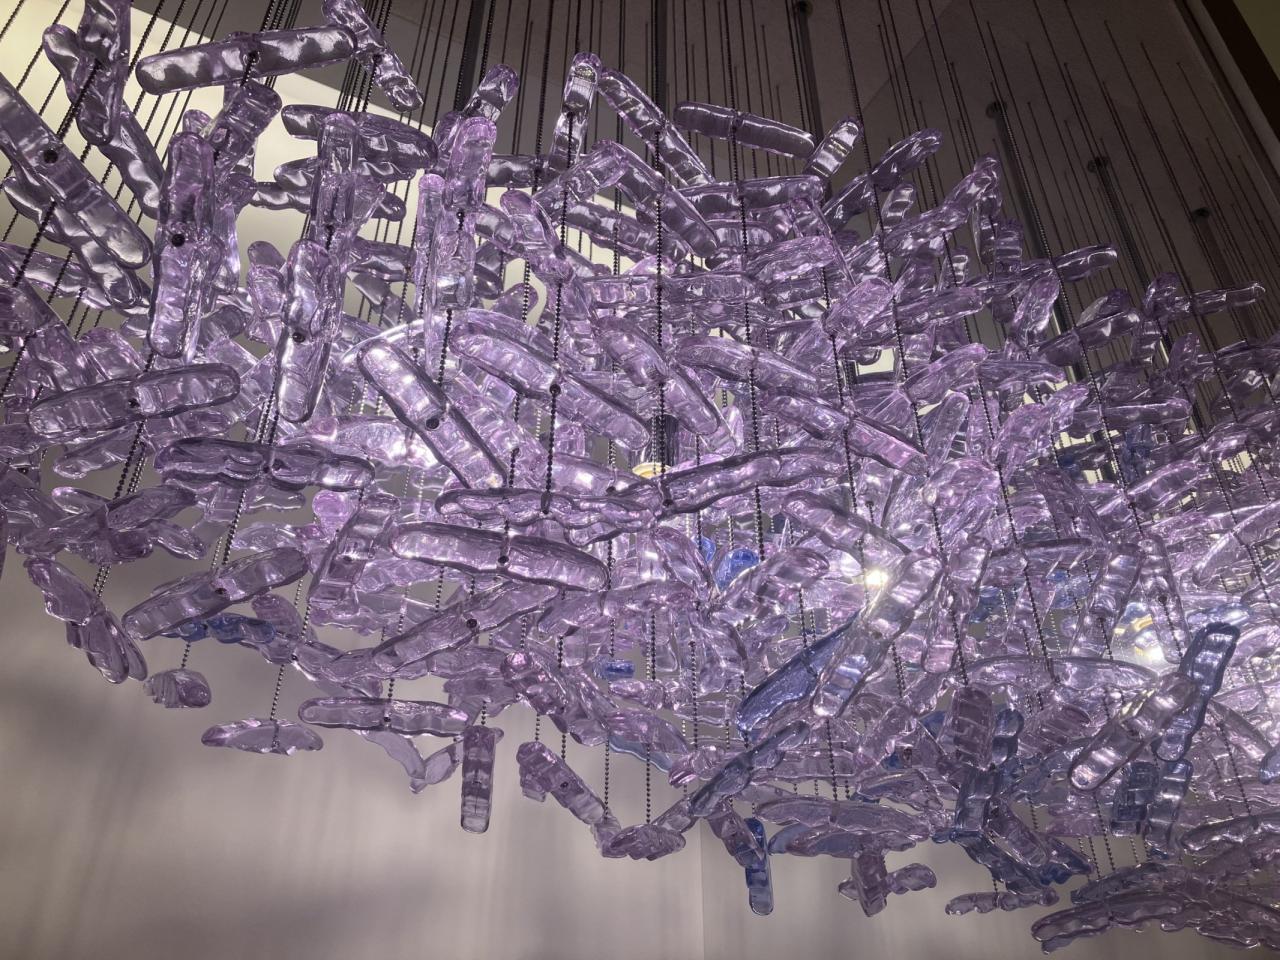 「リーガロイヤルホテル」のメインラウンジを彩る光造形「瑞雲」を原寸で再現した部分模型の展示